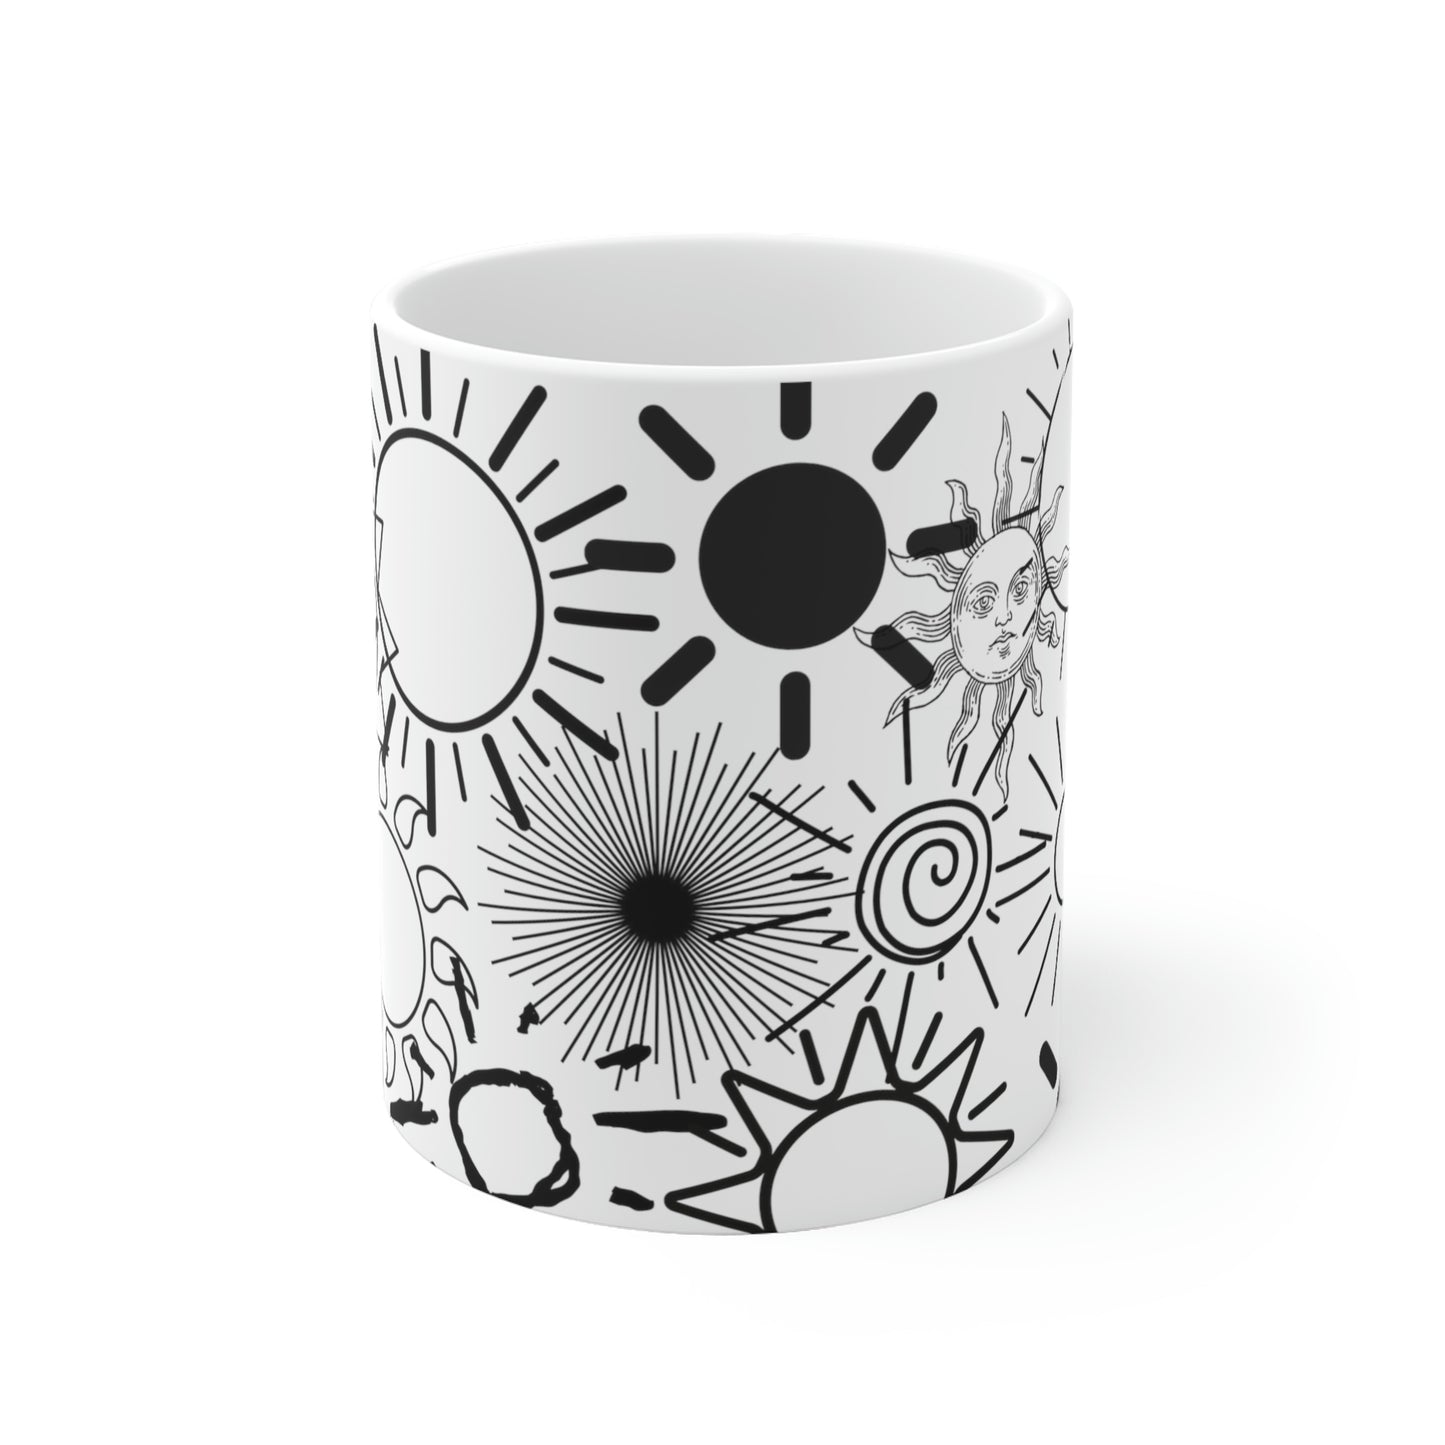 Suns coffee mug - White Ceramic Mug